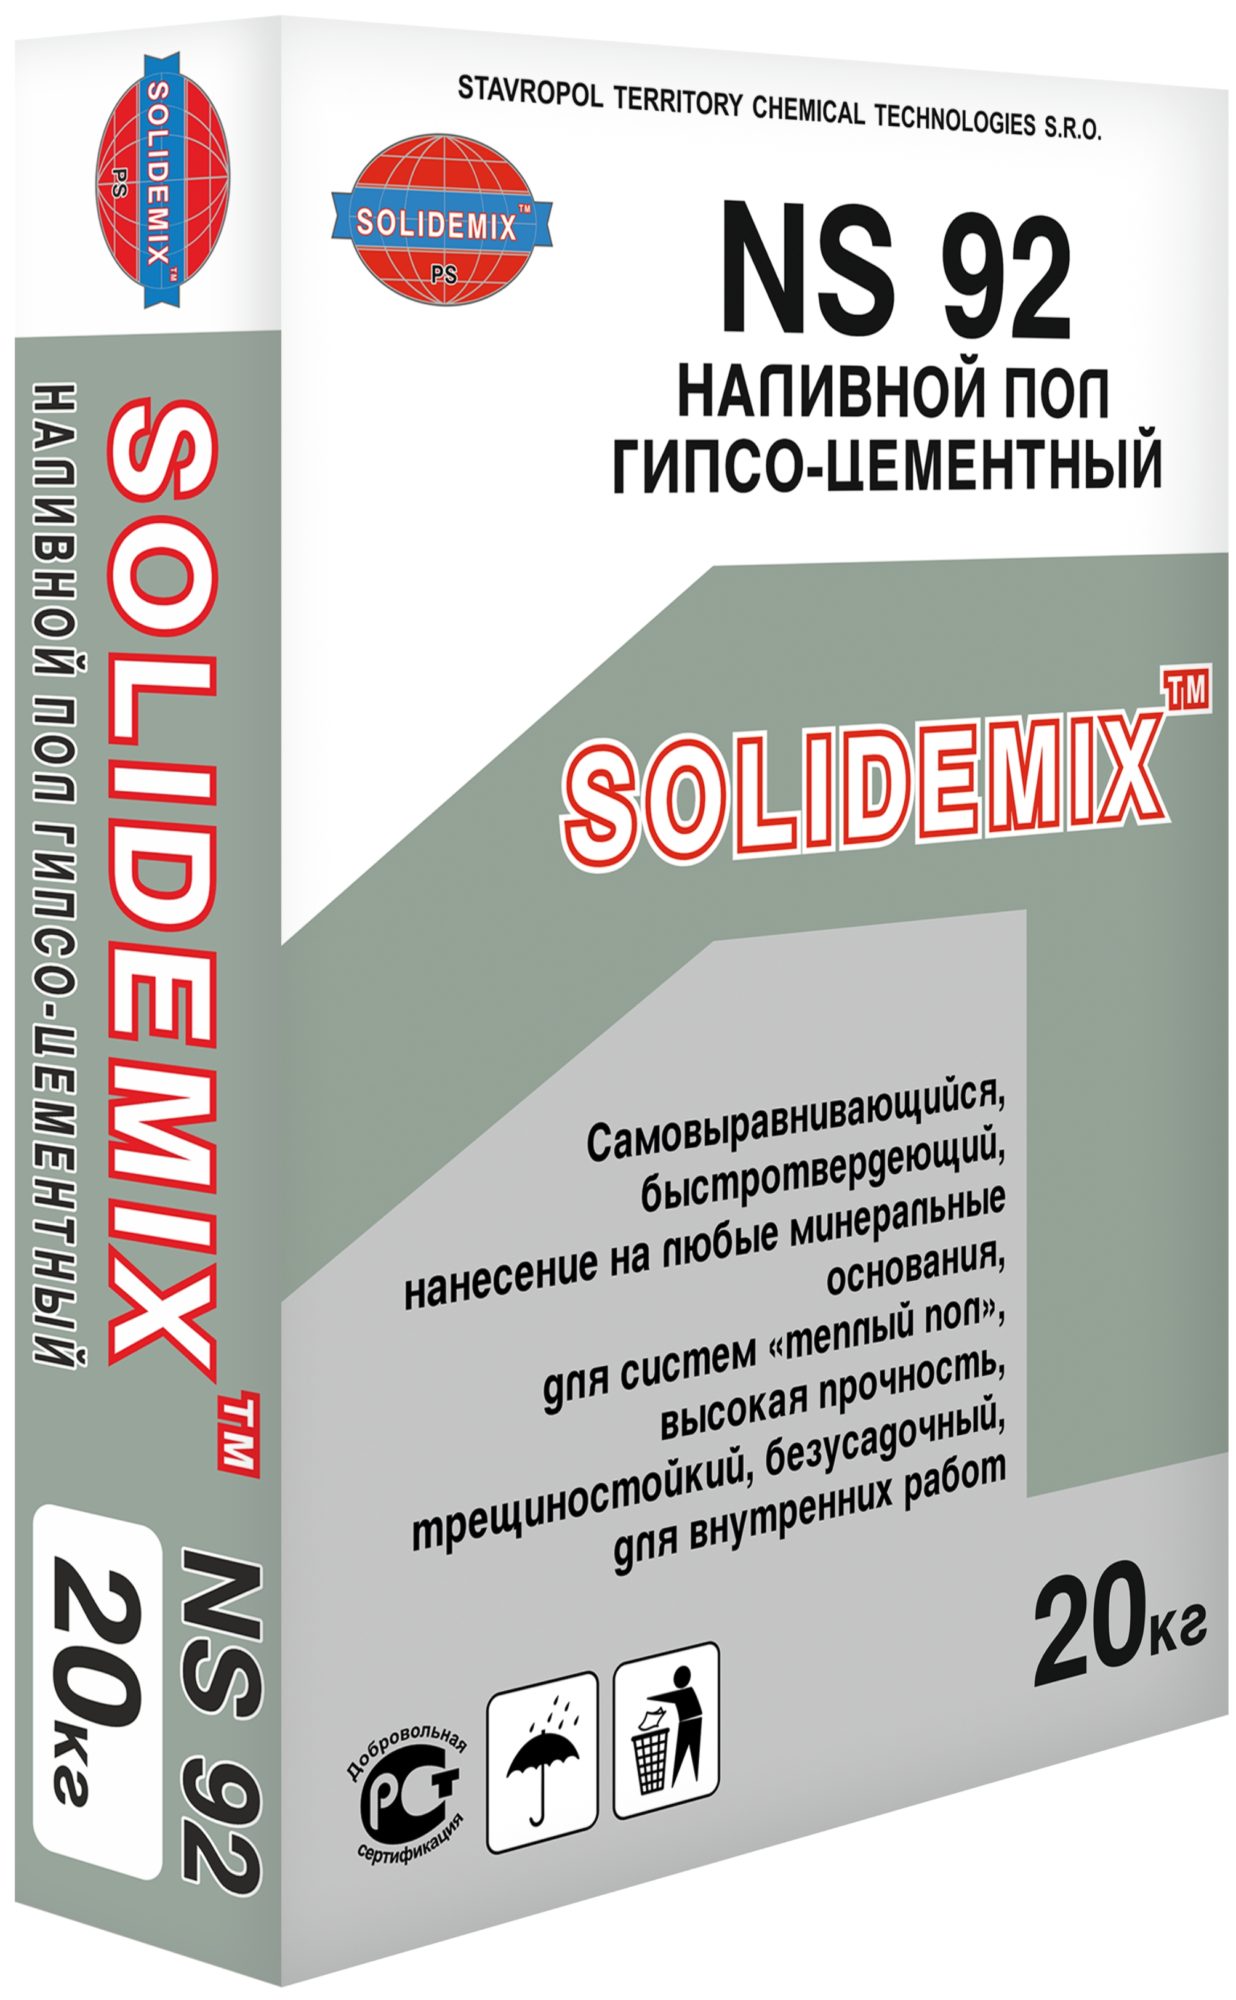 Купить Наливной пол гипсо-цементный NS 92 от SOLIDEMIX